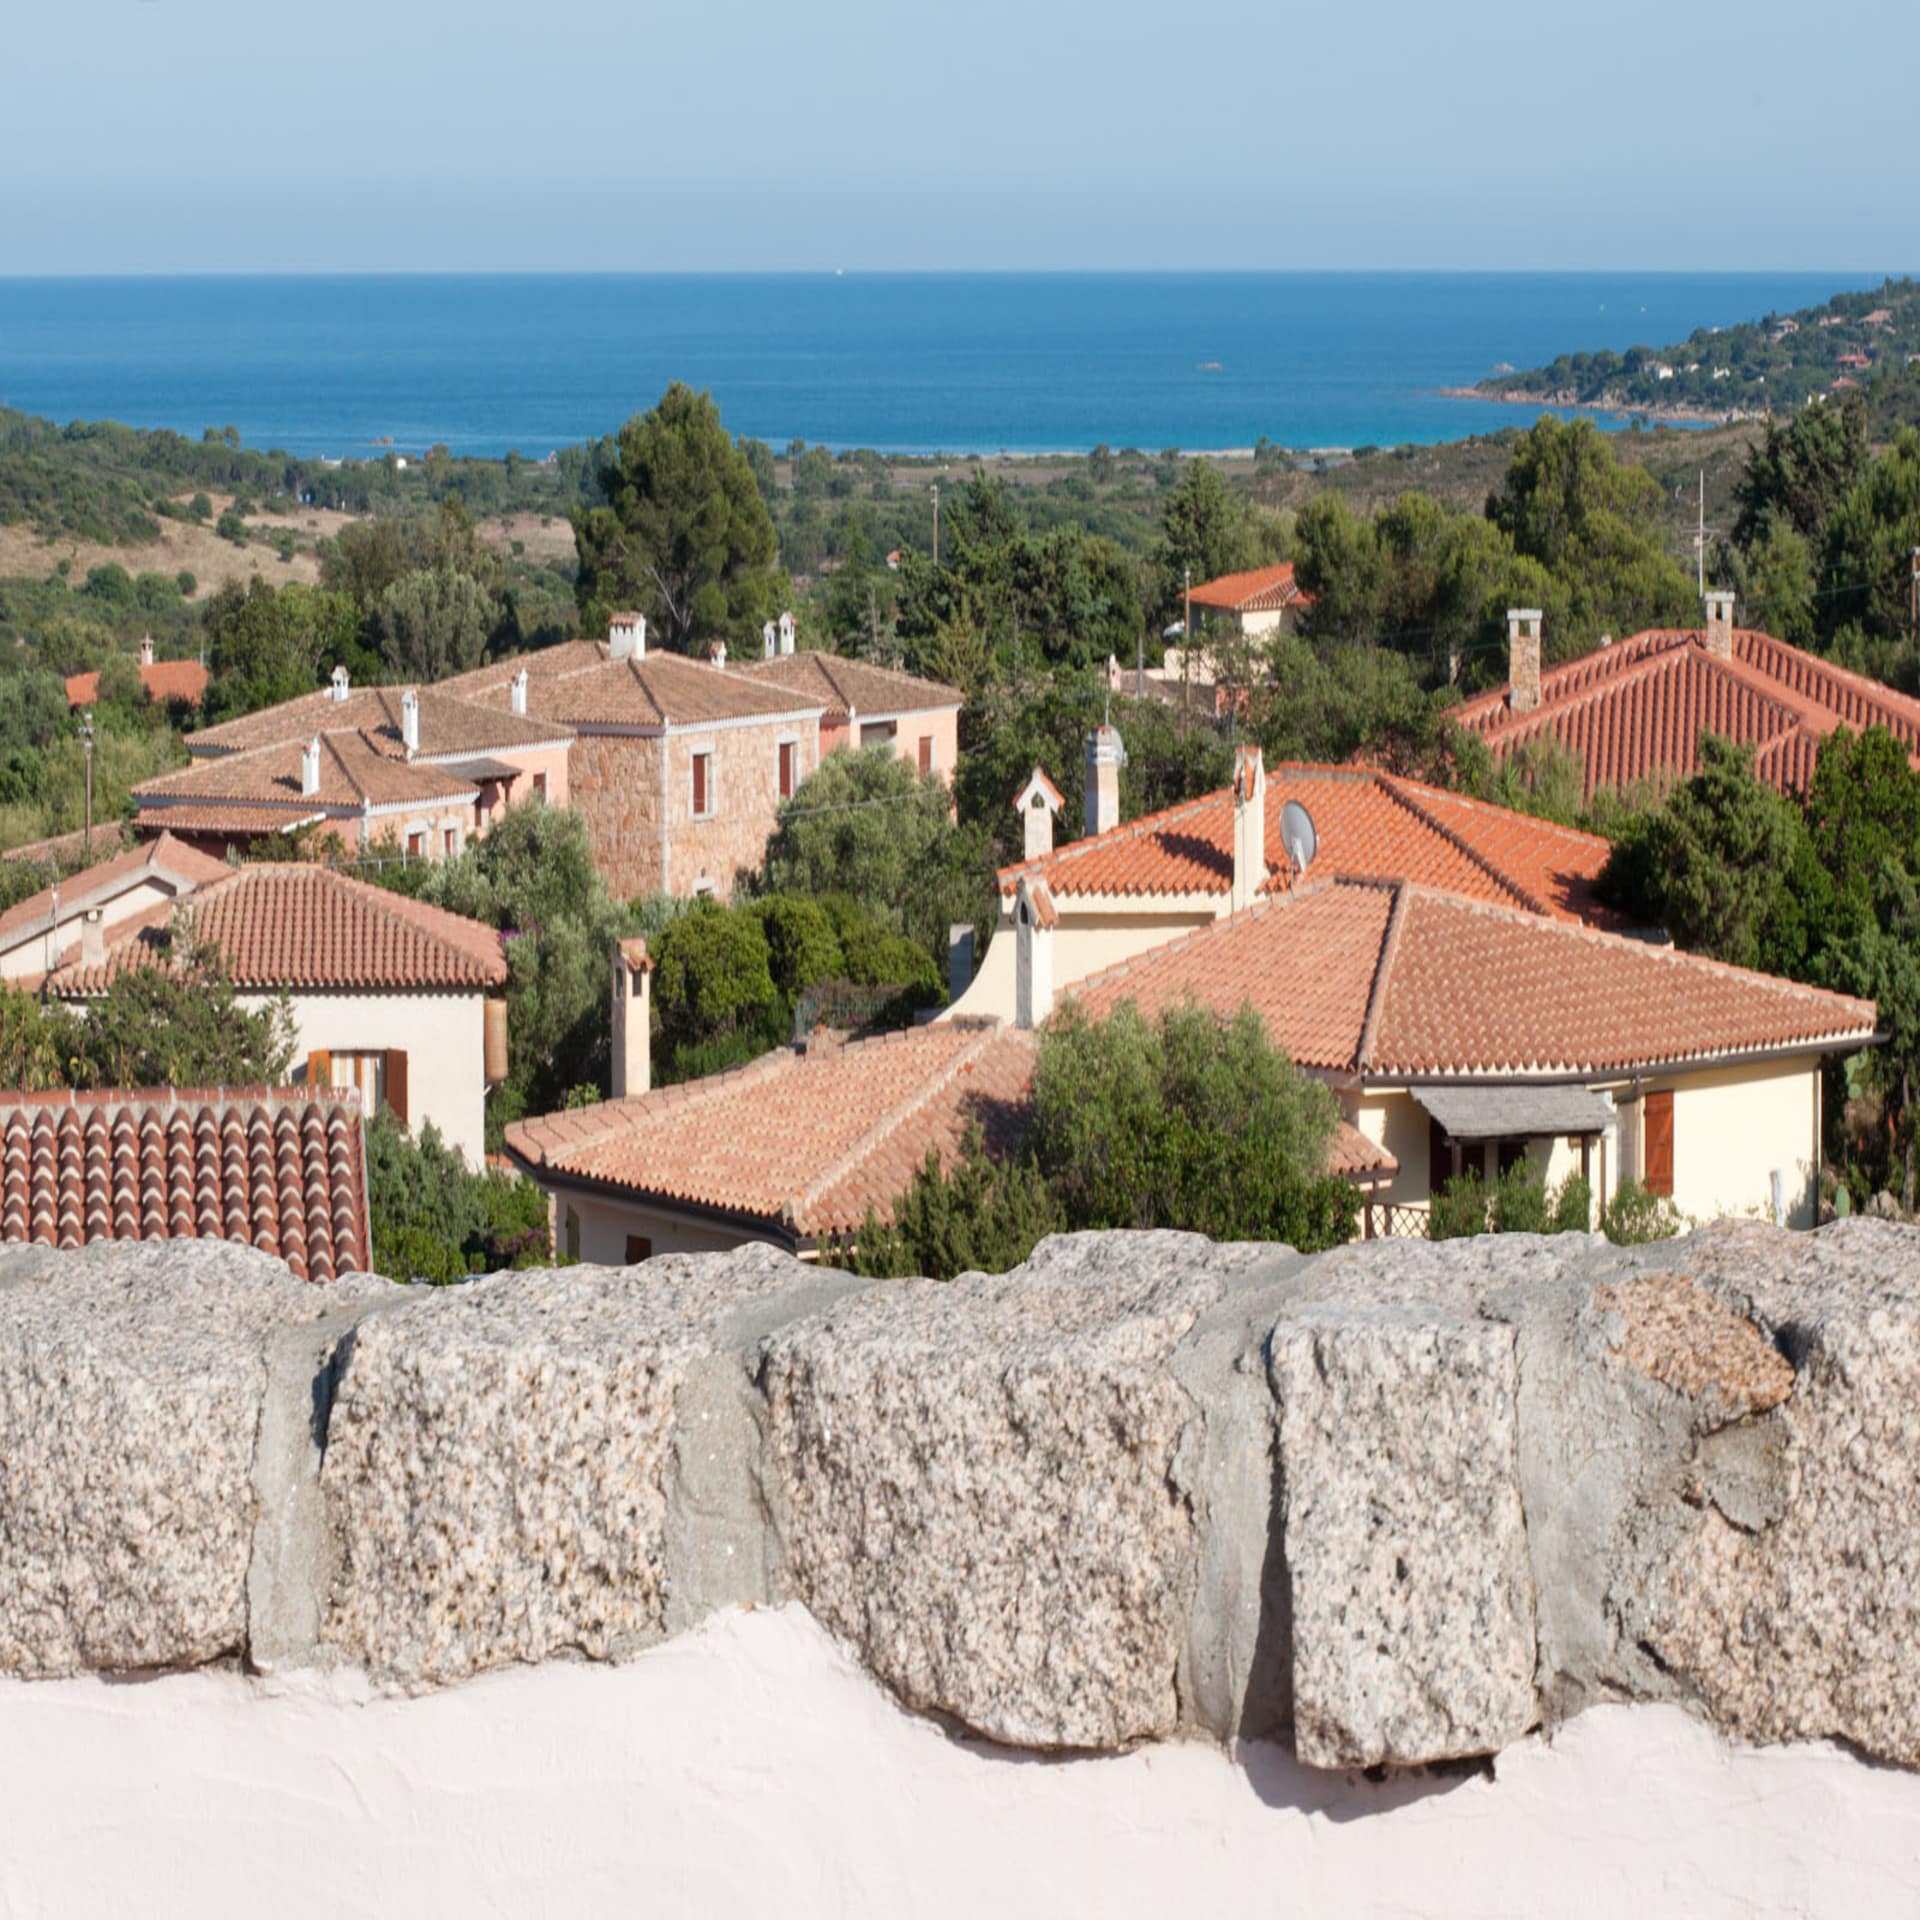 Blick von einem Balkon über weiße Häuser mit roten Dächern auf Sardinien, im Hintergrund das Meer. 